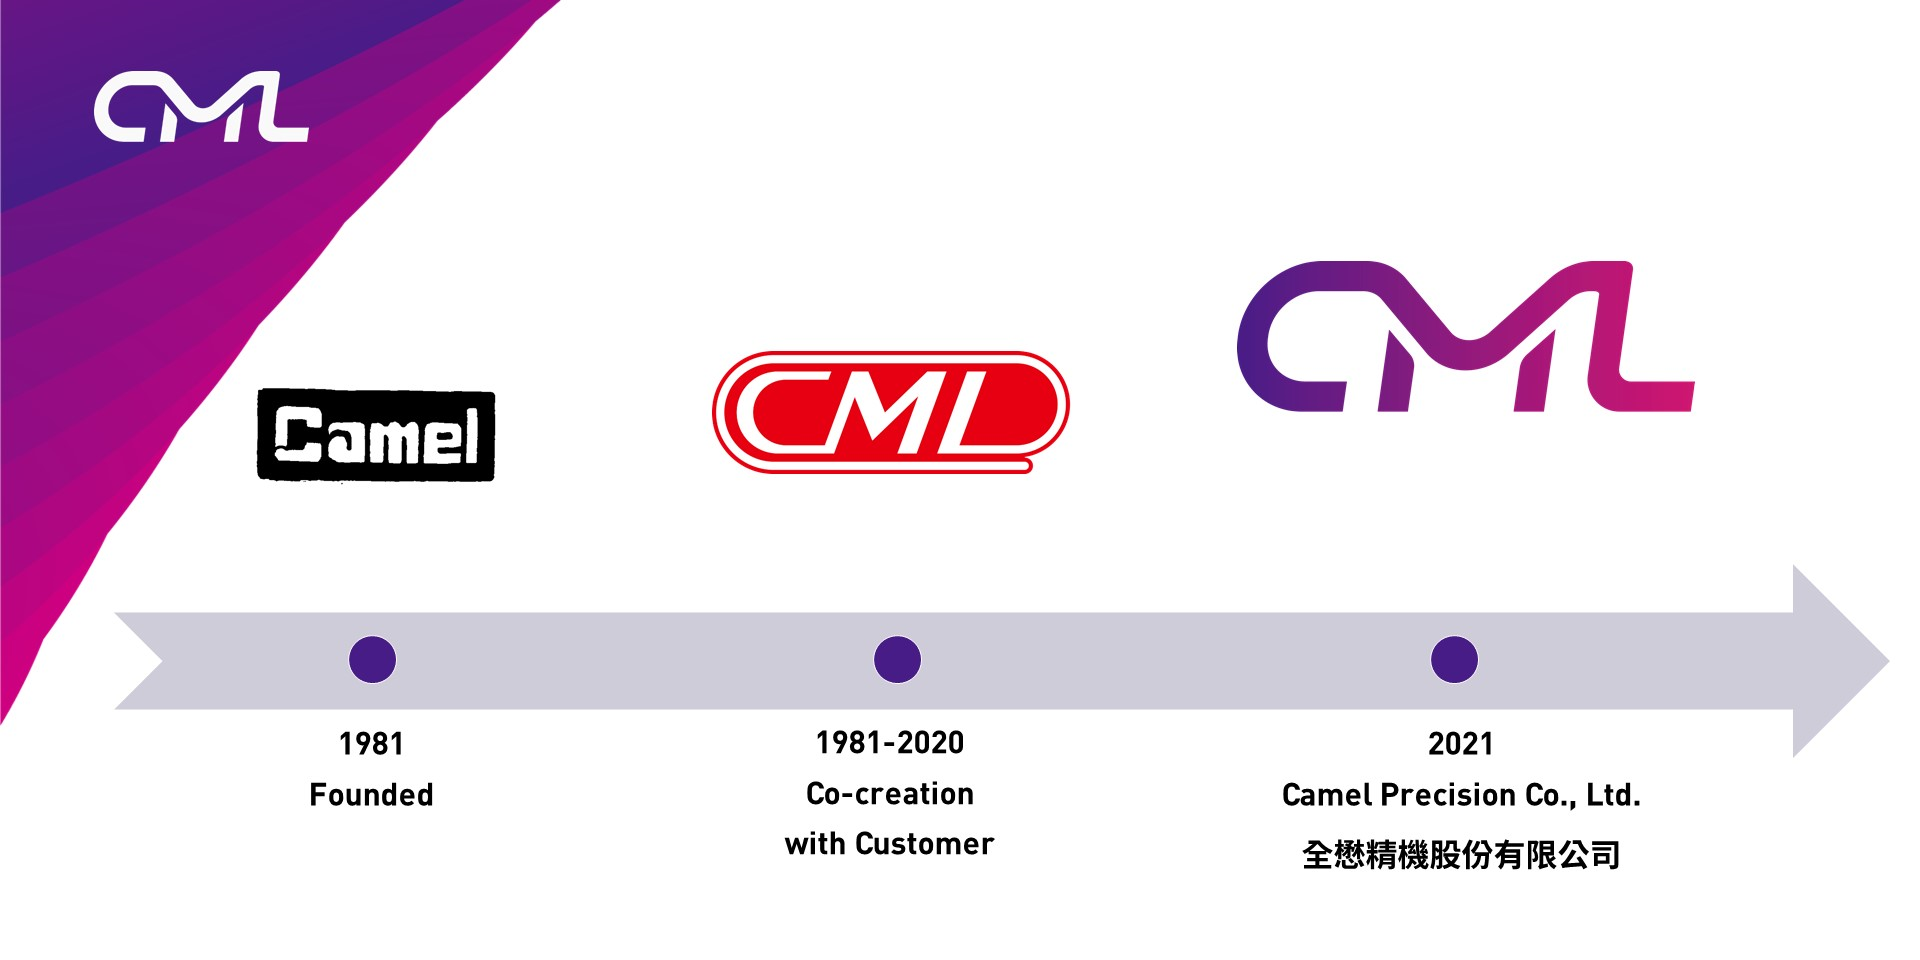 CML Logo Evolution